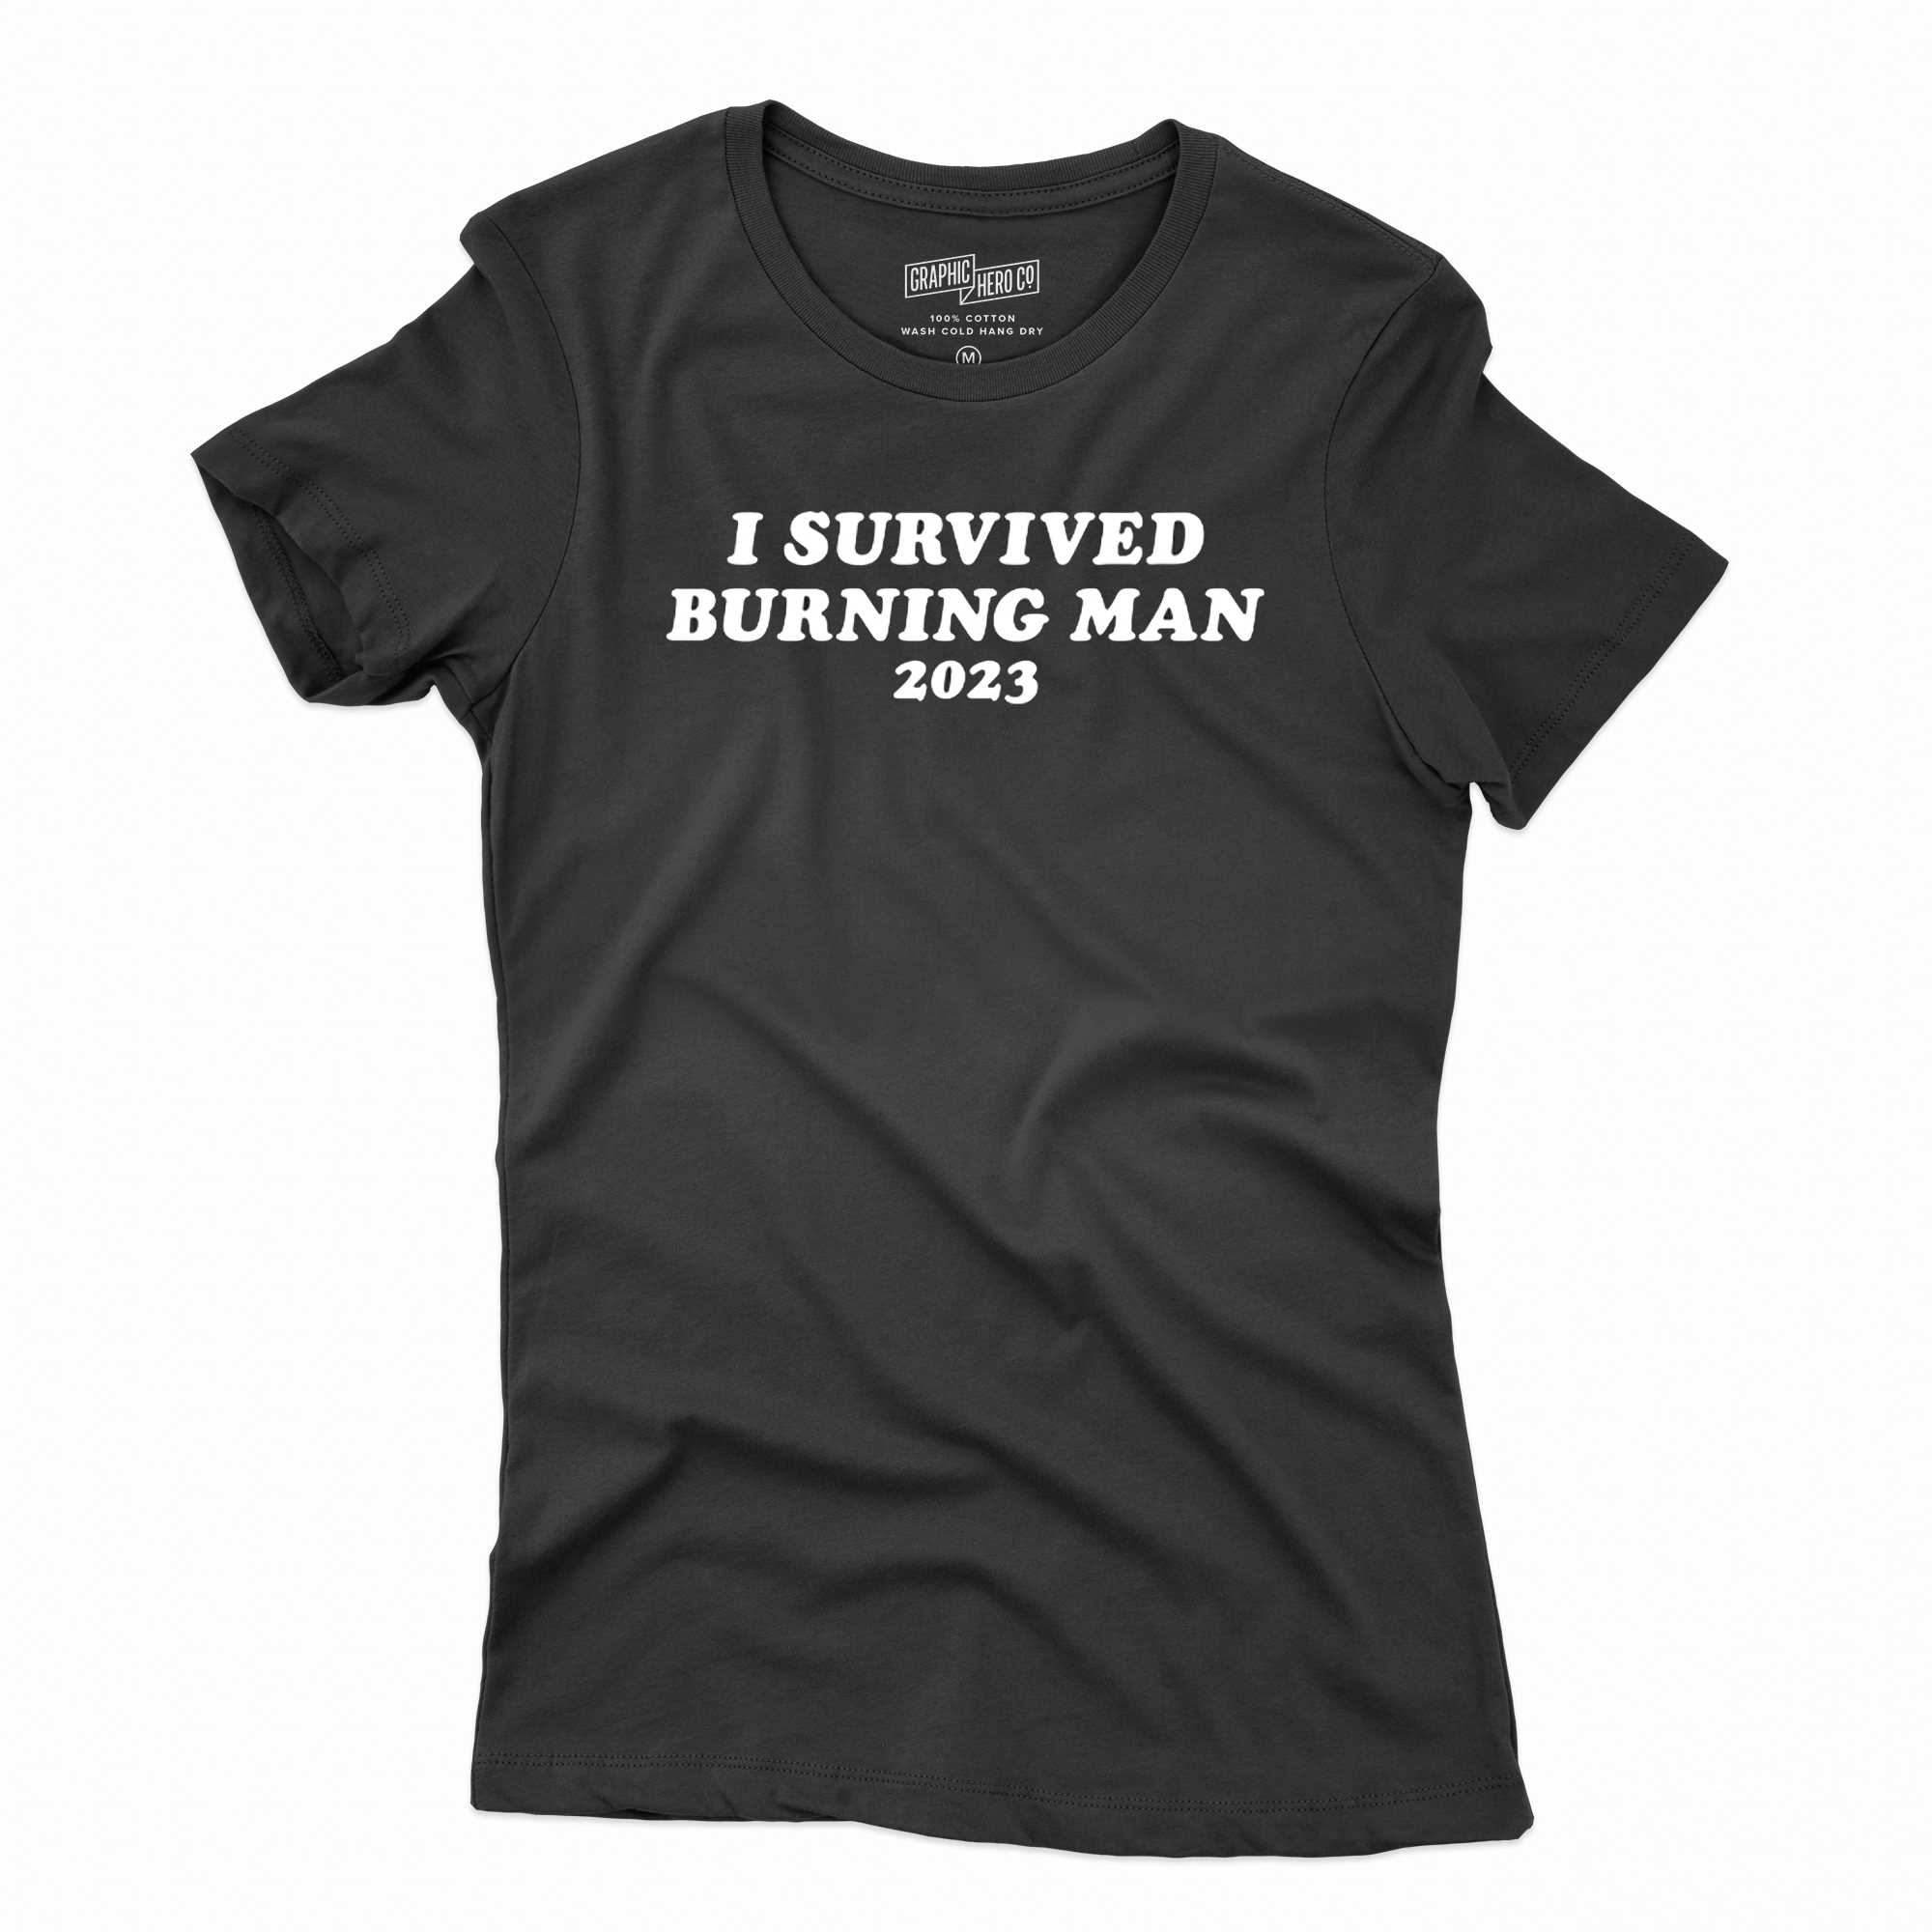 I Survived Burning Man 2023 Tshirt Shibtee Clothing